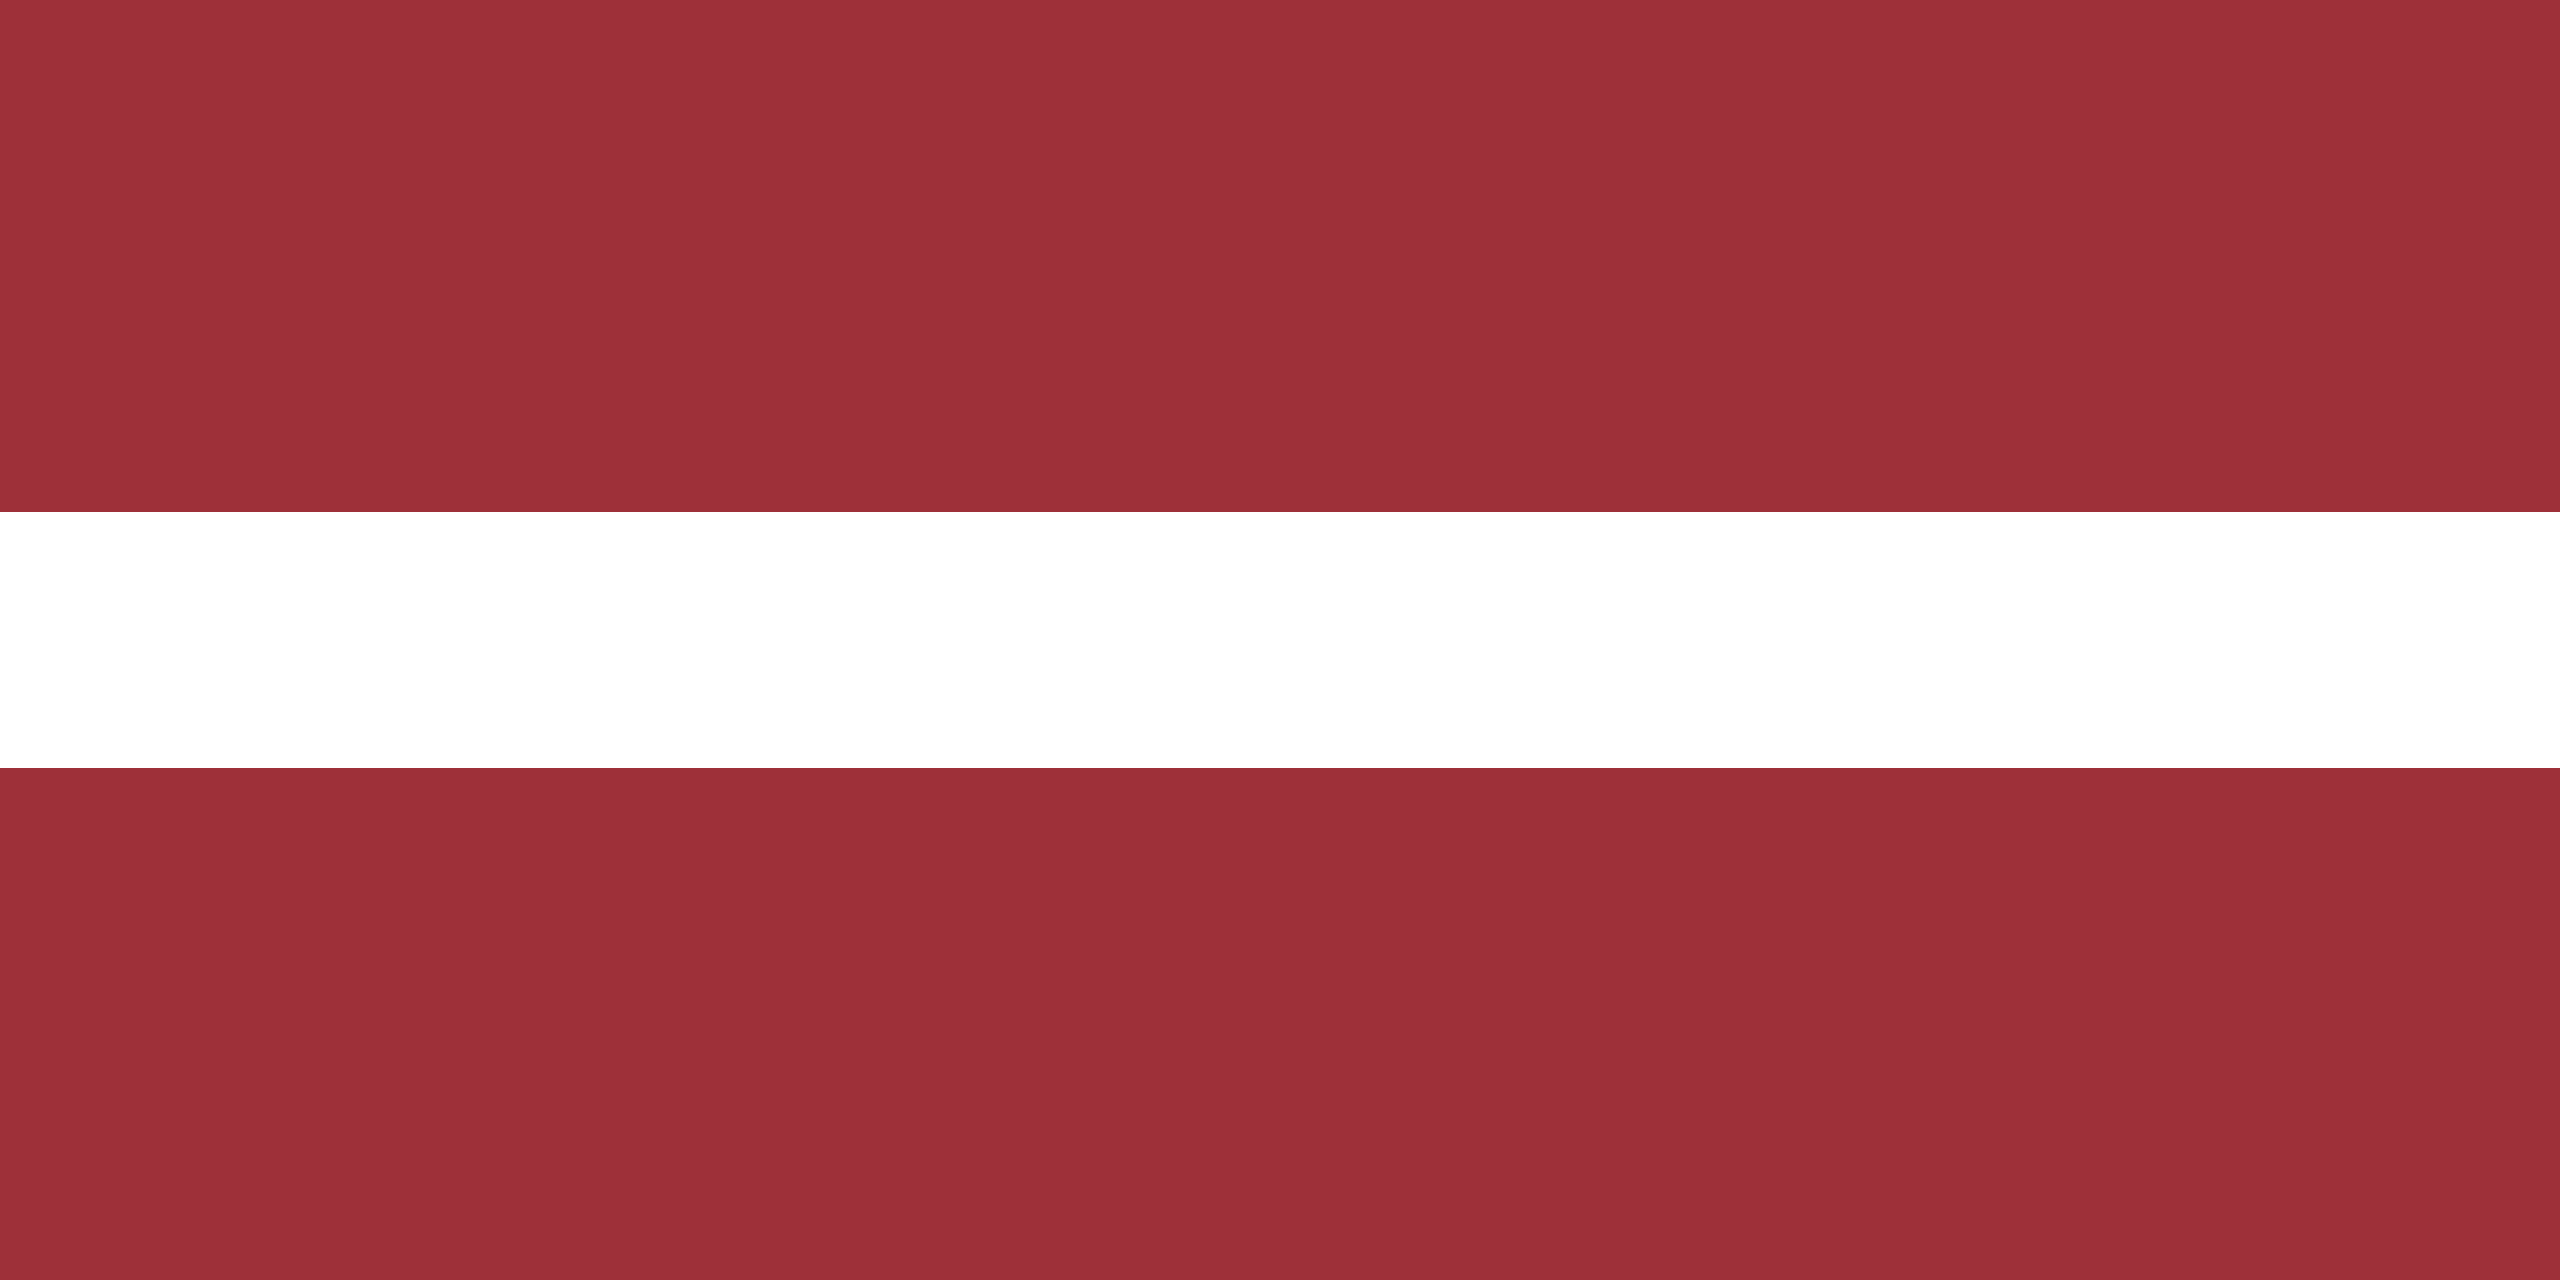 Letonya Tektip Geçiş Belgeleri Tükendi